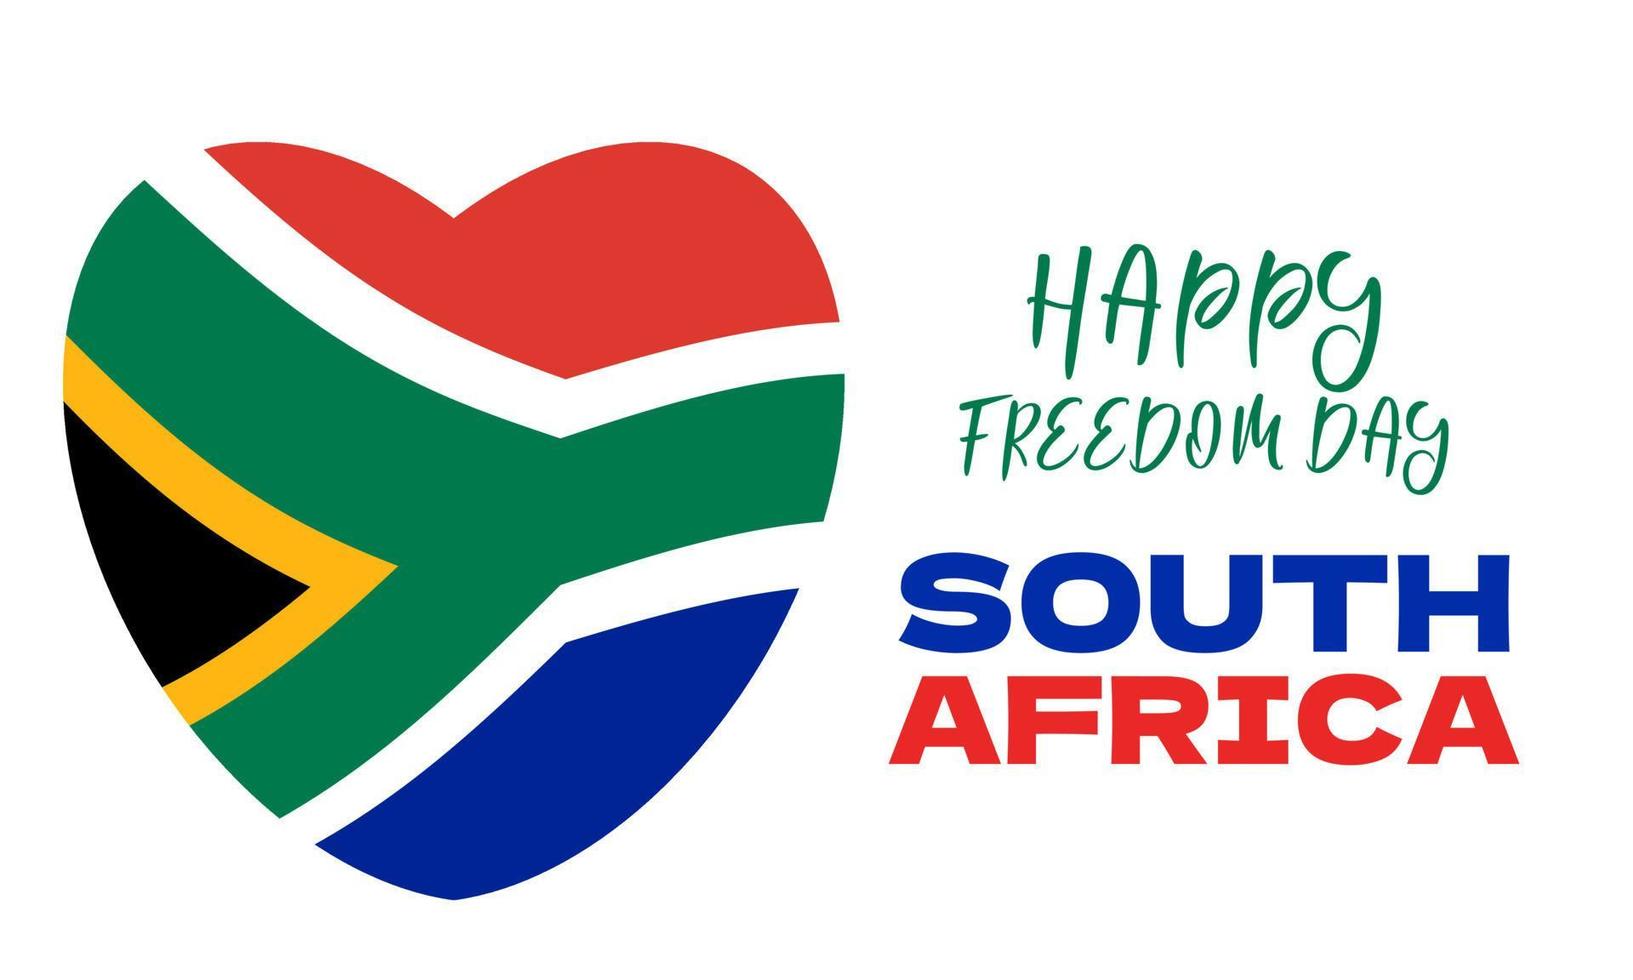 sur África libertad día africaans vryheidsdag en blanco fondo, póster, tarjeta, bandera diseño. vector